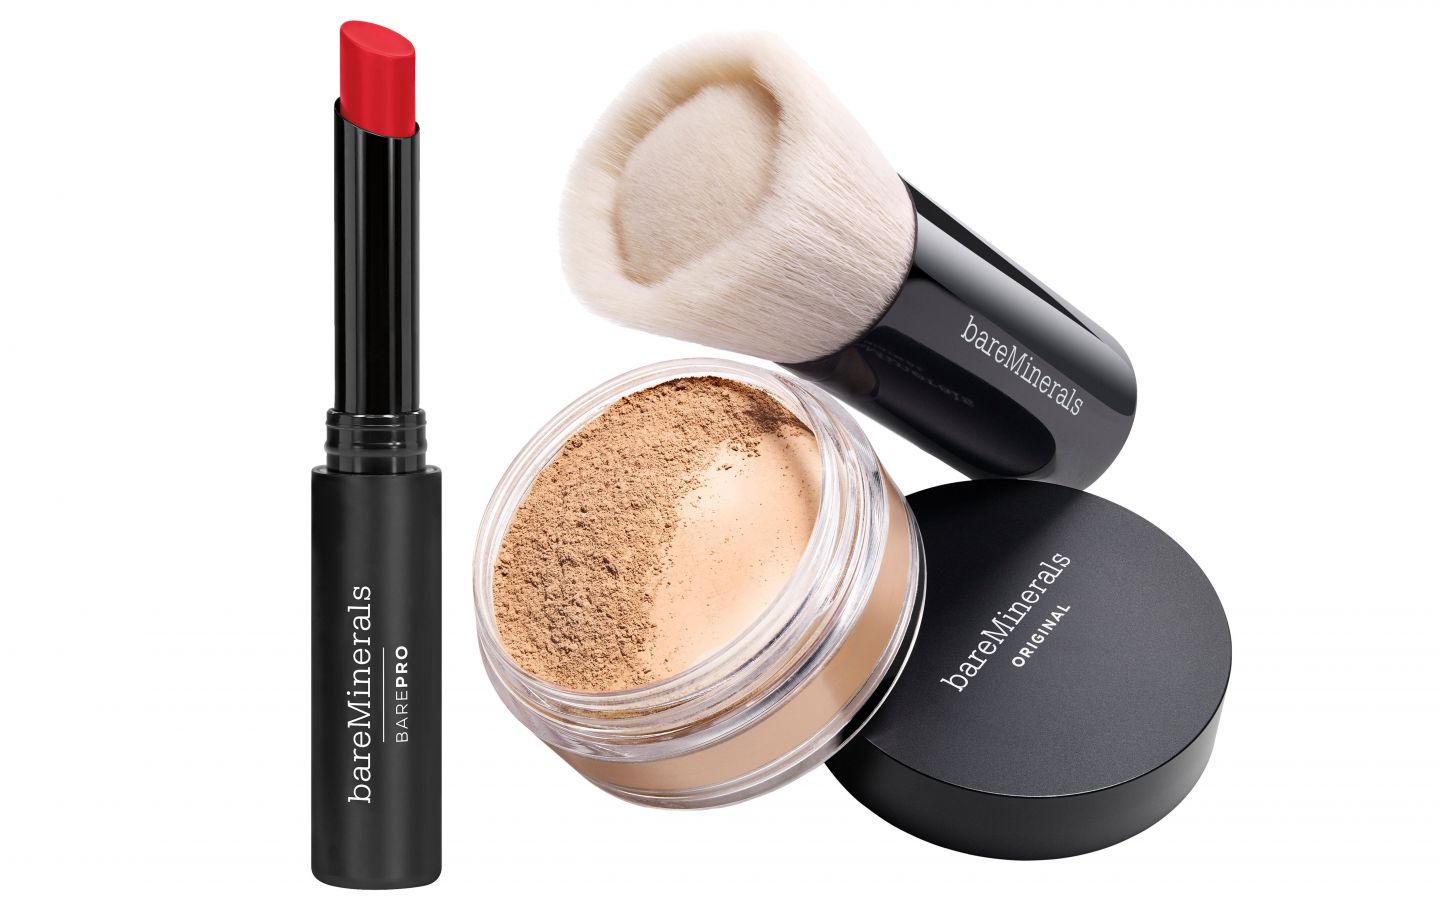 Red lipstick, powder and powder brush of the brand BareMinerals